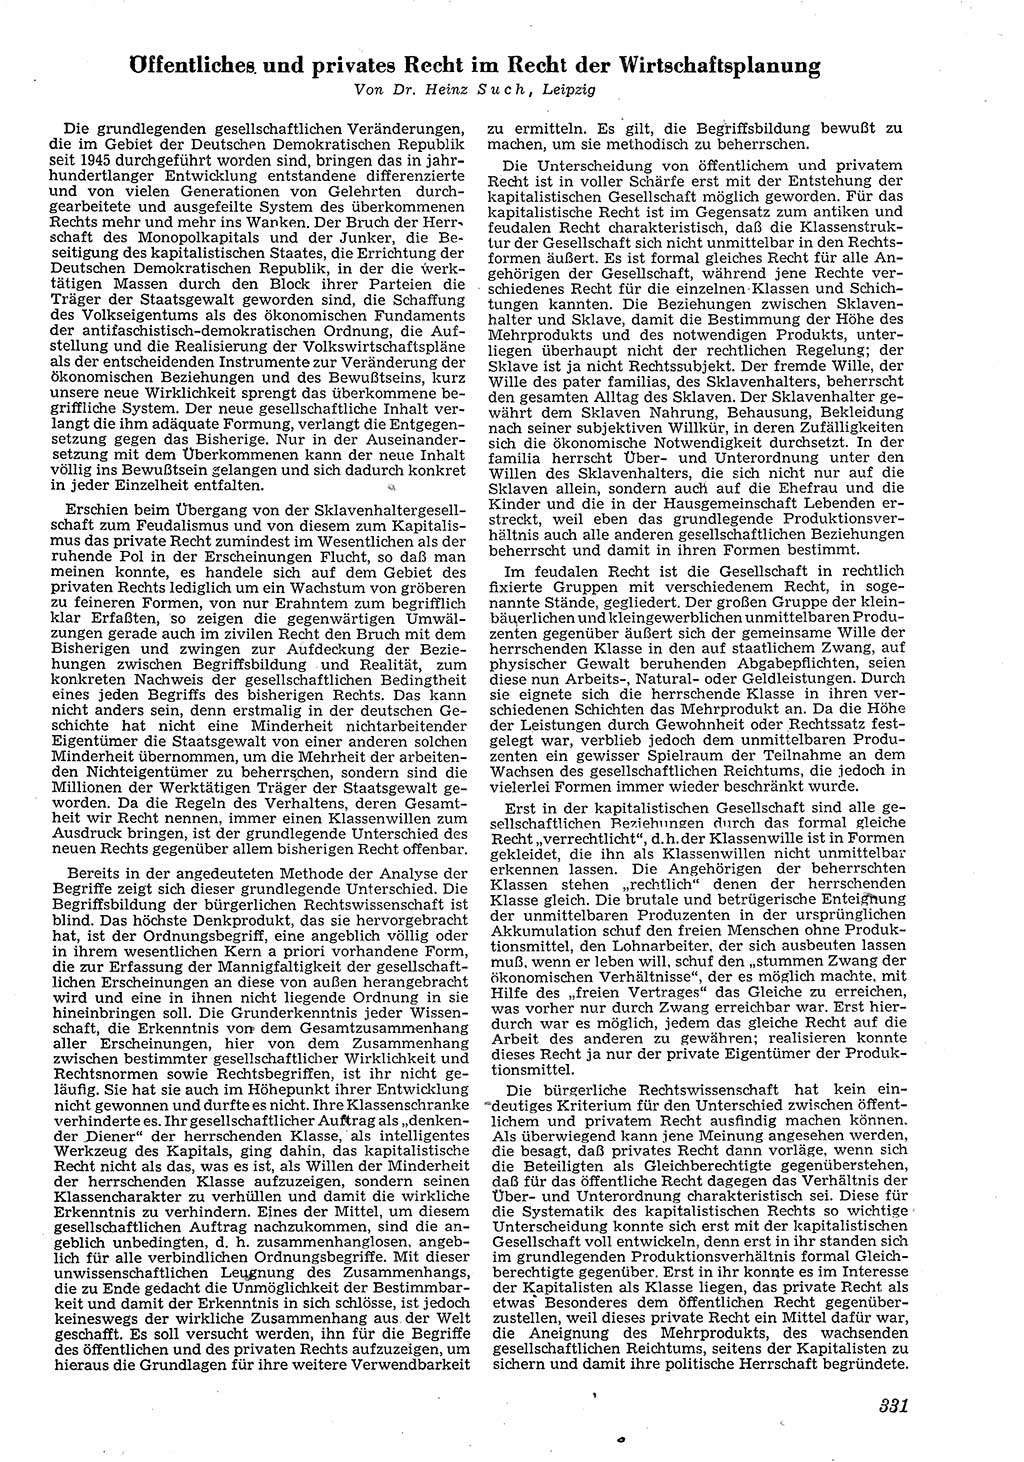 Neue Justiz (NJ), Zeitschrift für Recht und Rechtswissenschaft [Deutsche Demokratische Republik (DDR)], 4. Jahrgang 1950, Seite 331 (NJ DDR 1950, S. 331)